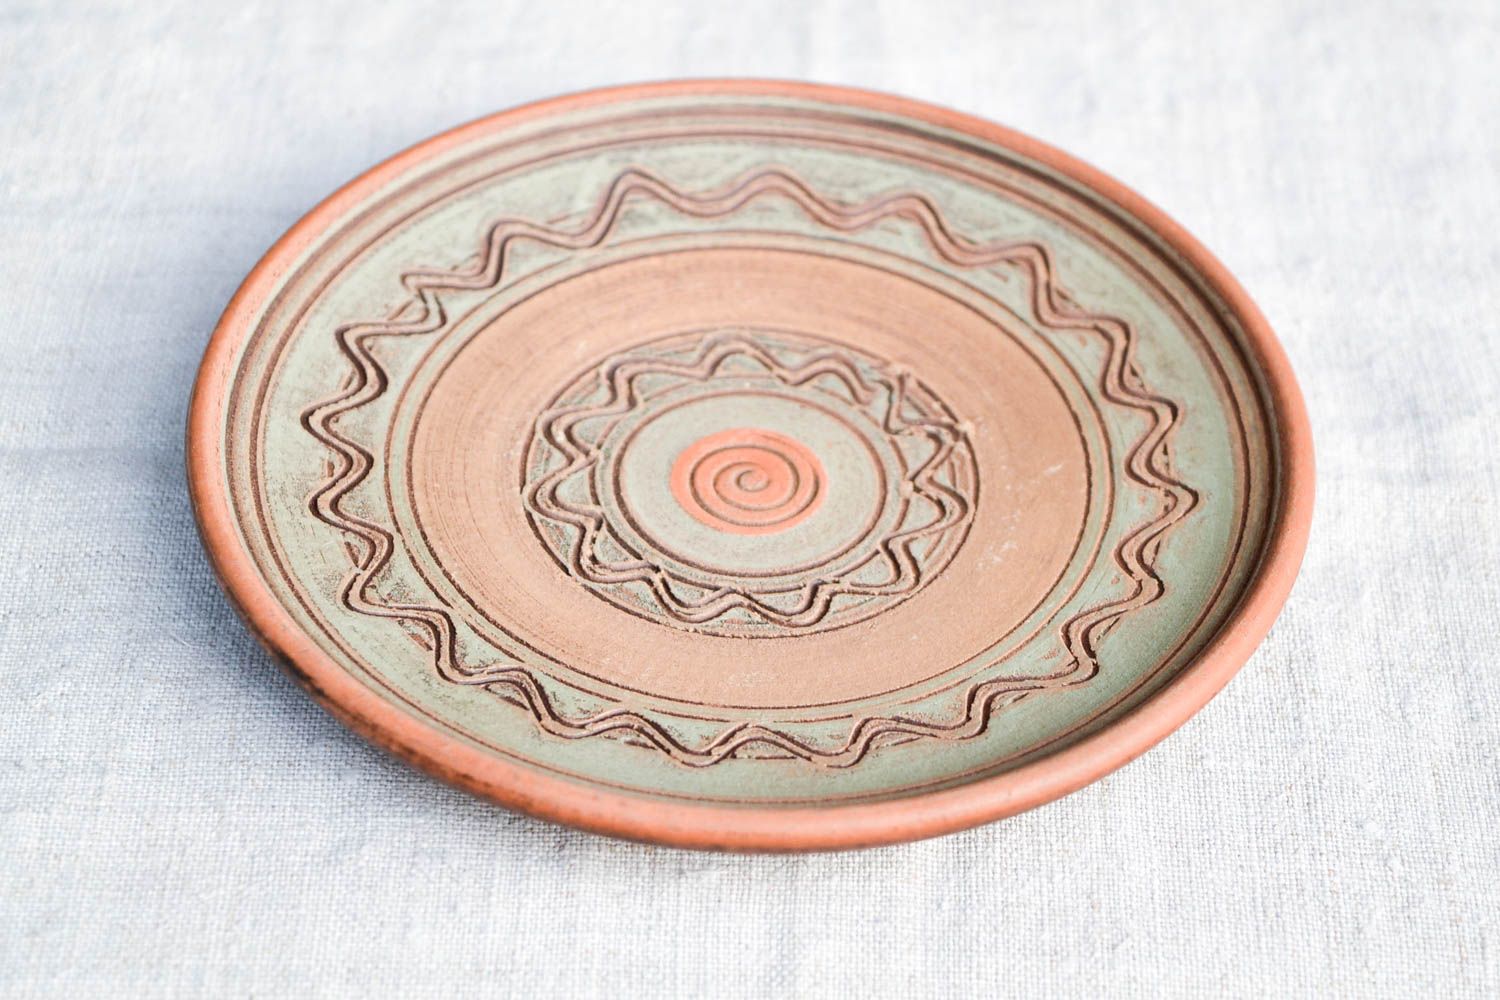 Расписная тарелка хенд мейд глиняная посуда керамическая тарелка эко стиль фото 4